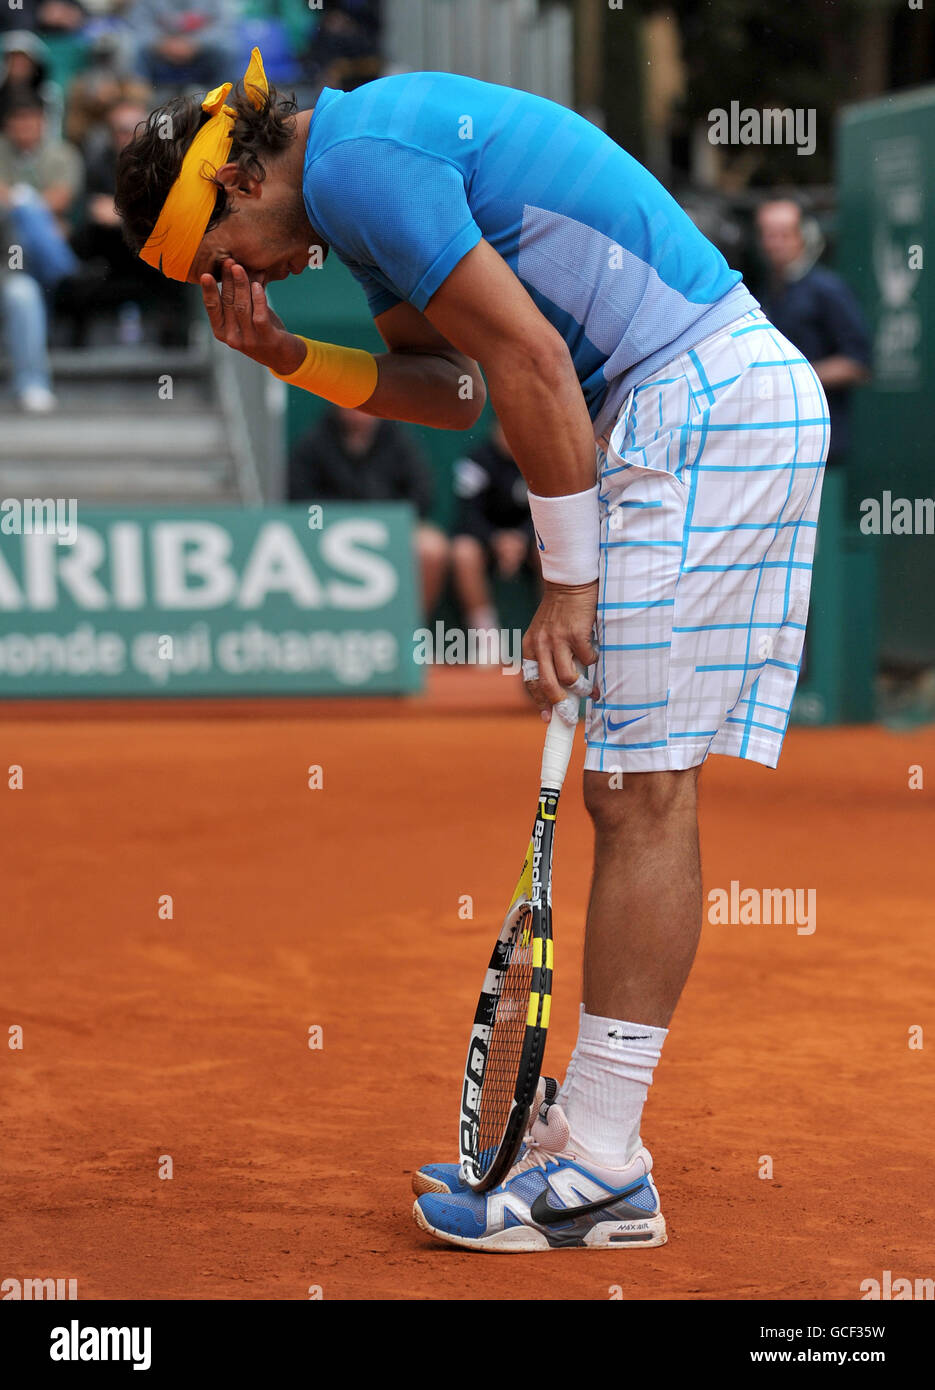 Tenis - ATP World Tour Masters - Día Cinco - Monte-Carlo - Mens Singles -  Juan Carlos Ferrero contra Rafael Nadal. Rafael Nadal, español, limpia la  arcilla de sus ojos Fotografía de stock - Alamy